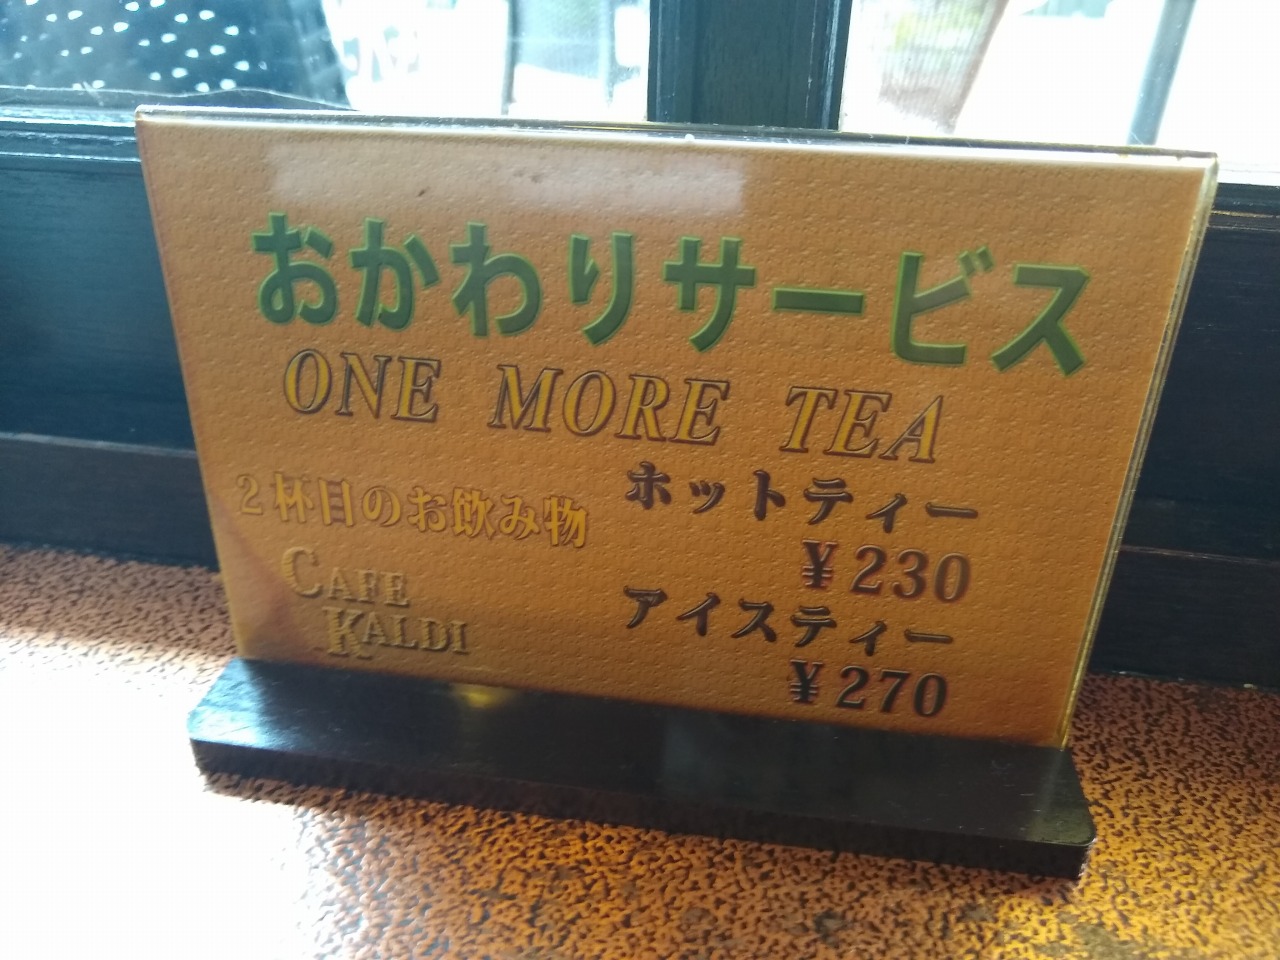 綱島の喫茶店カルディ紅茶おかわりサービス